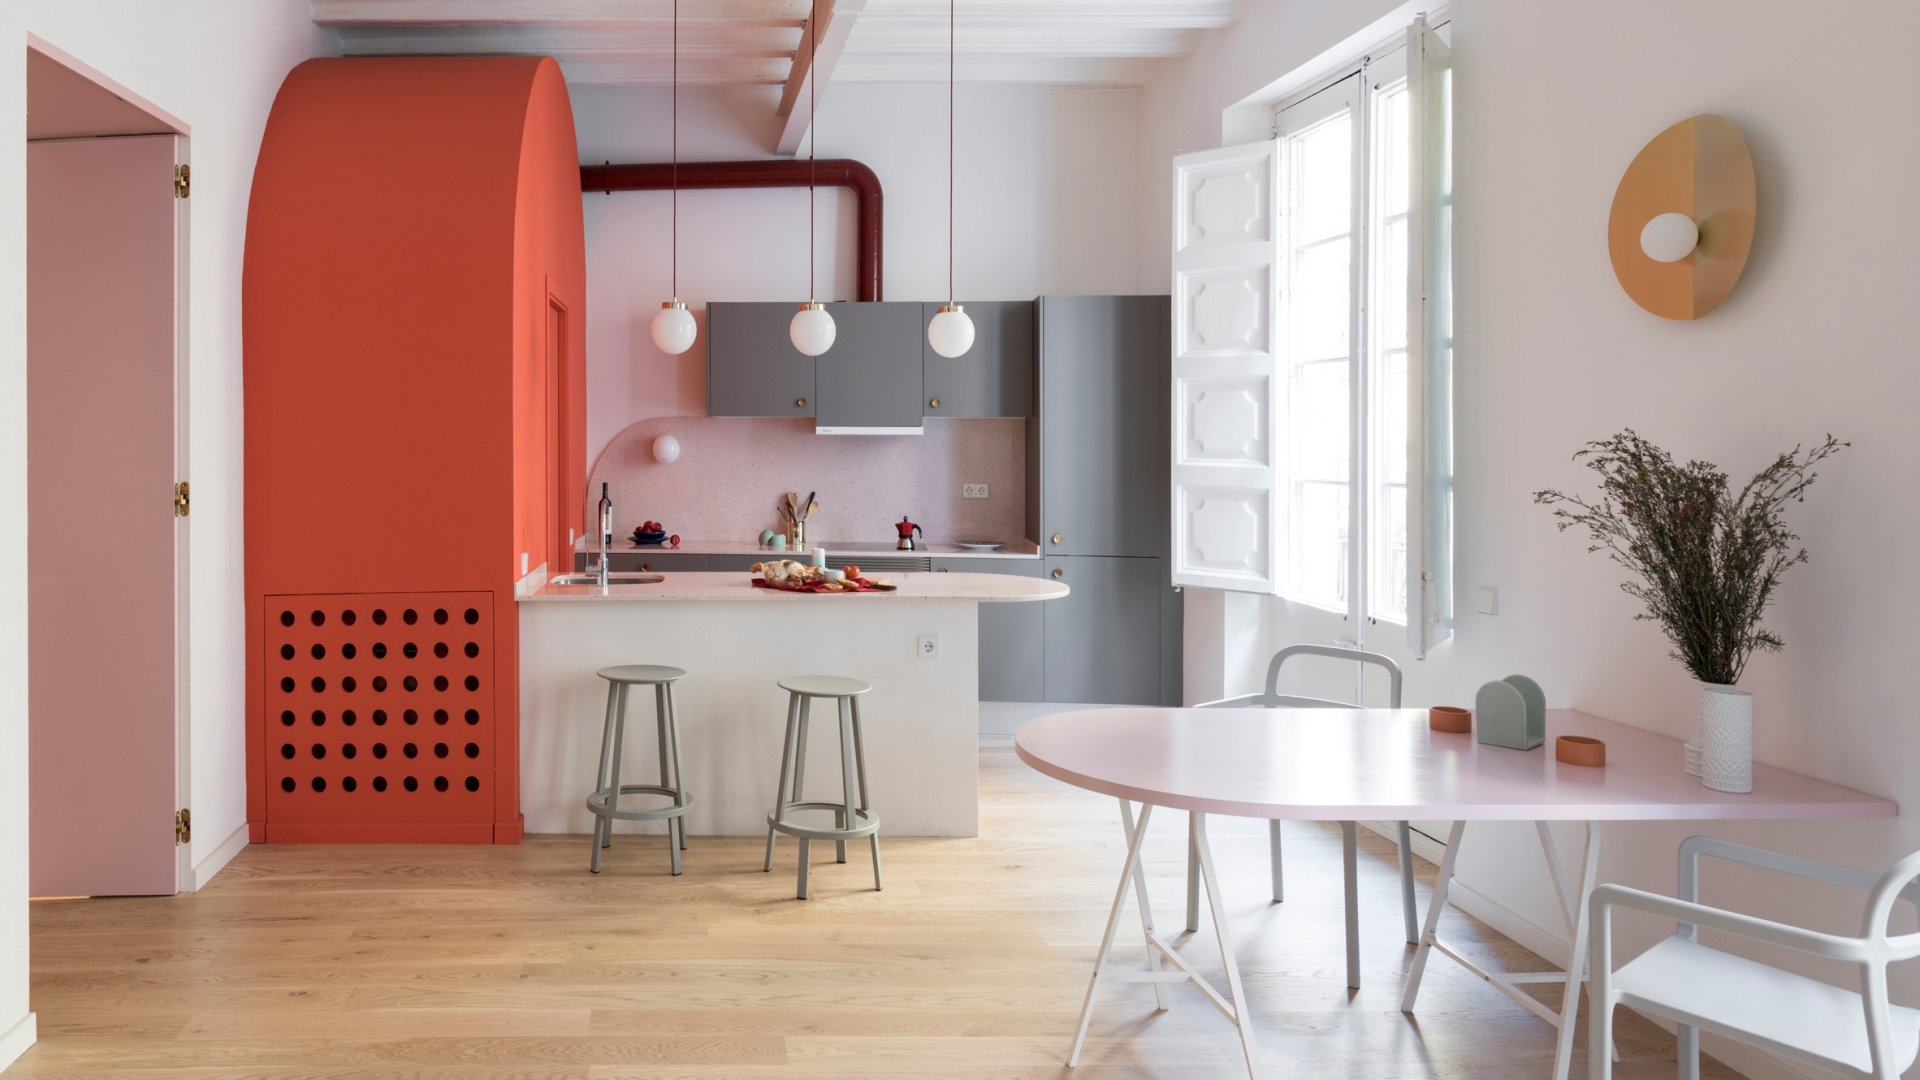 Colombo and Serboli Architecture đã thiết kế phòng bếp có không gian mở tươi sáng cùng nội thất sắc màu trẻ trung như cam, hồng phấn,... Ngoài bàn ăn chính, NTK còn tích hợp quầy bar nối liền tủ lưu trữ màu cam với đường cong bo tròn mềm mại.